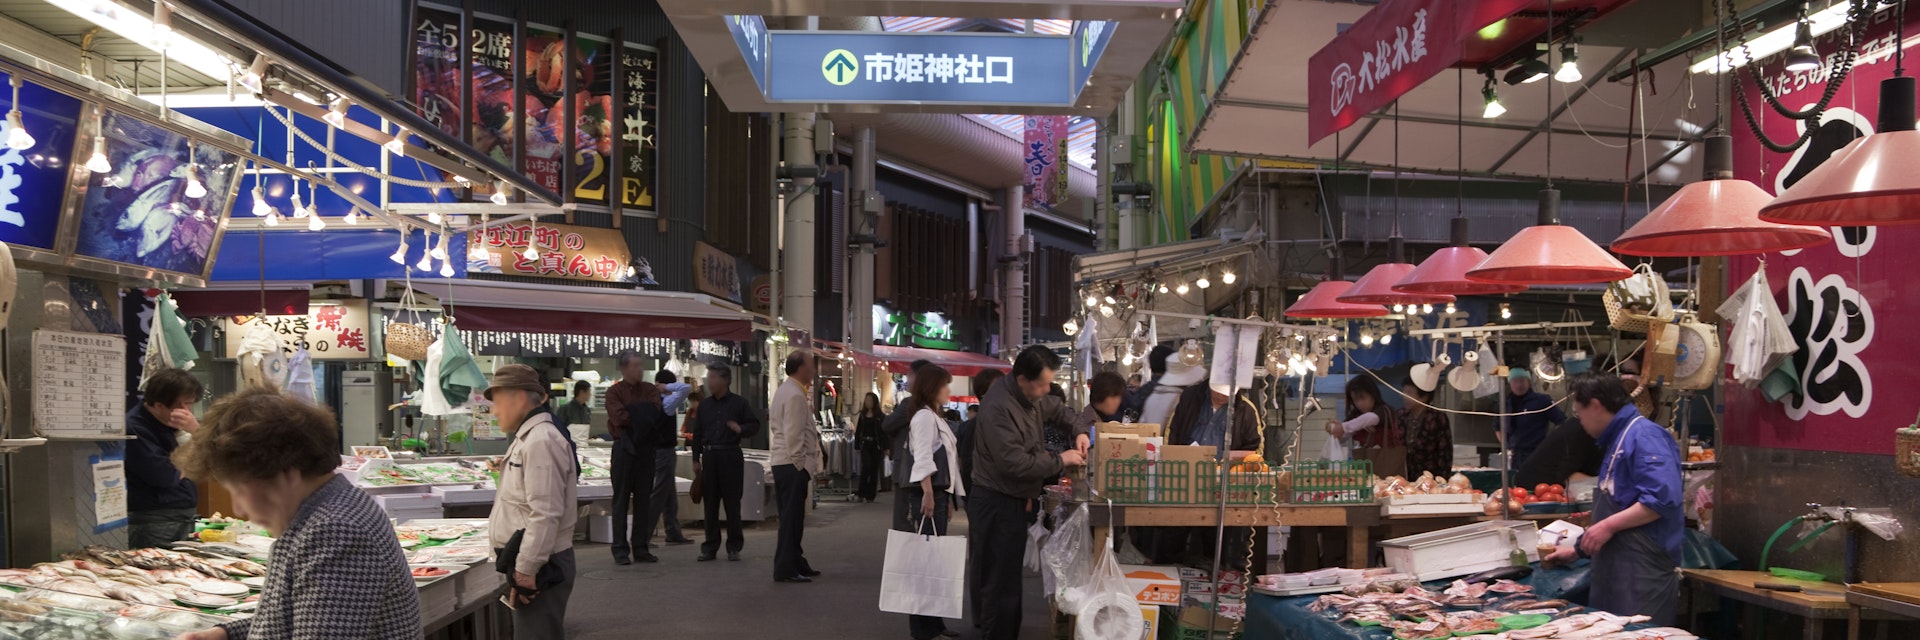 Omi-cho Market, Kanazawa, Ishikawa, Japan